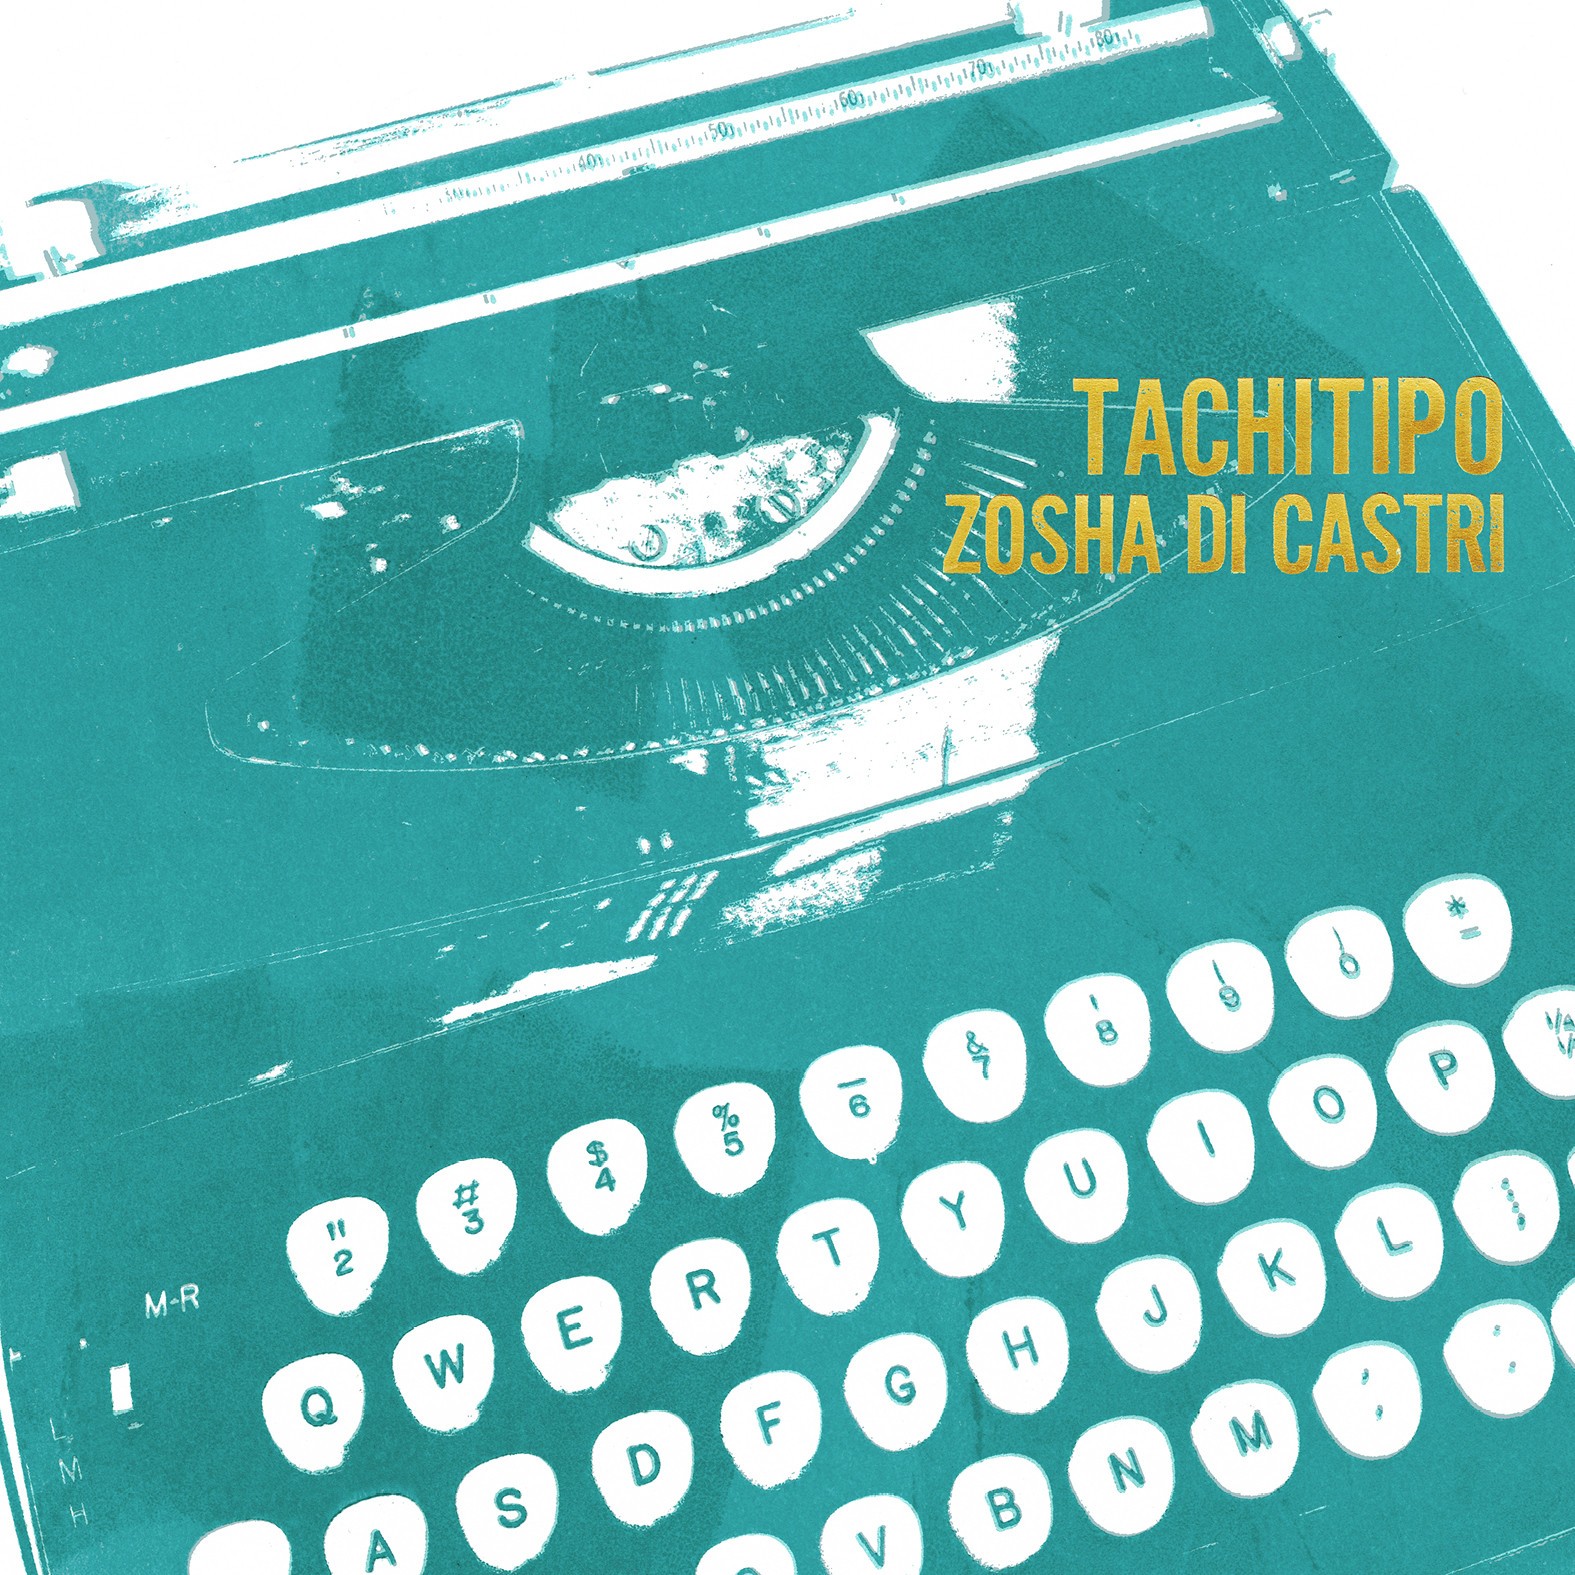 Cover of Zosha Di Castri Album Release Party "Tachitipo"